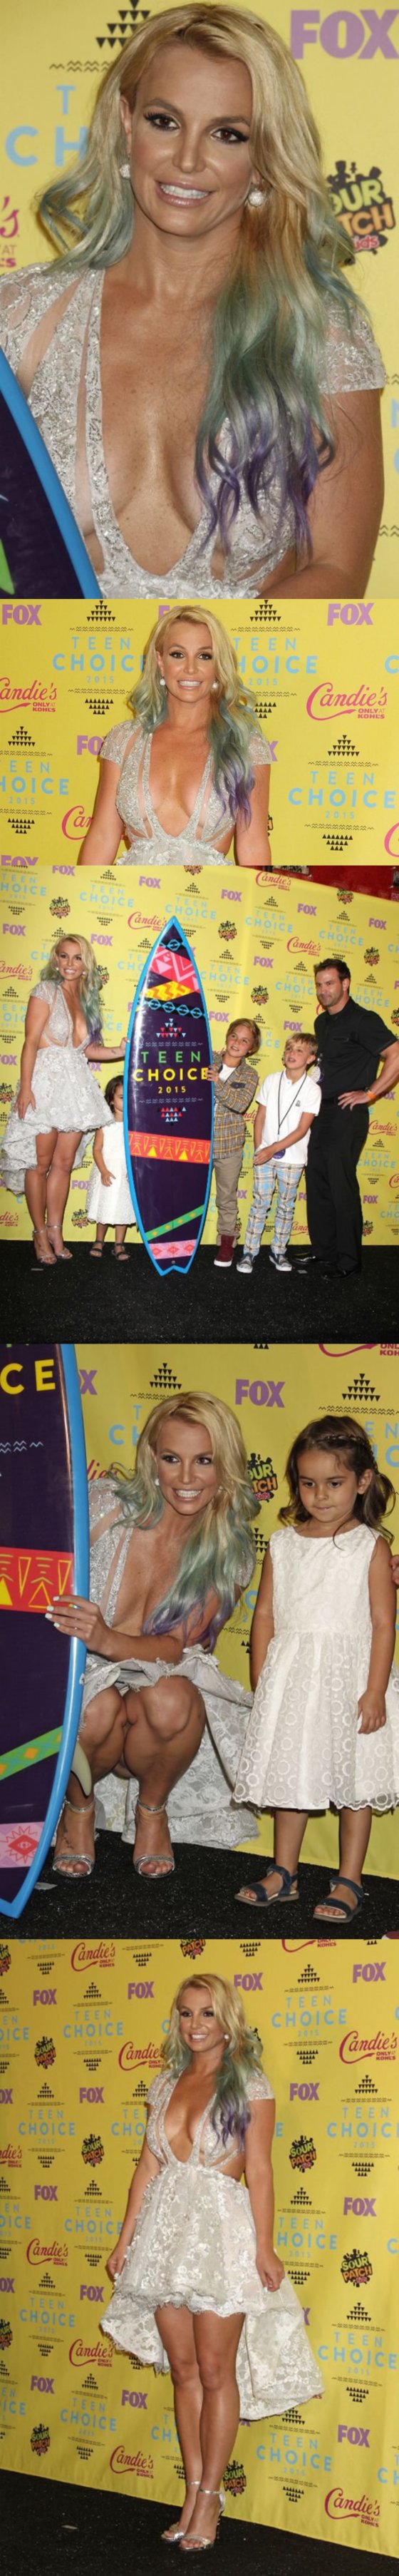 ბრიტნი სპირსი საბავშვო "Teen Choice Awards"-ის დაჯილდოებაზე მოშიშვლებული მკერდით მივიდა. კოლაჟი